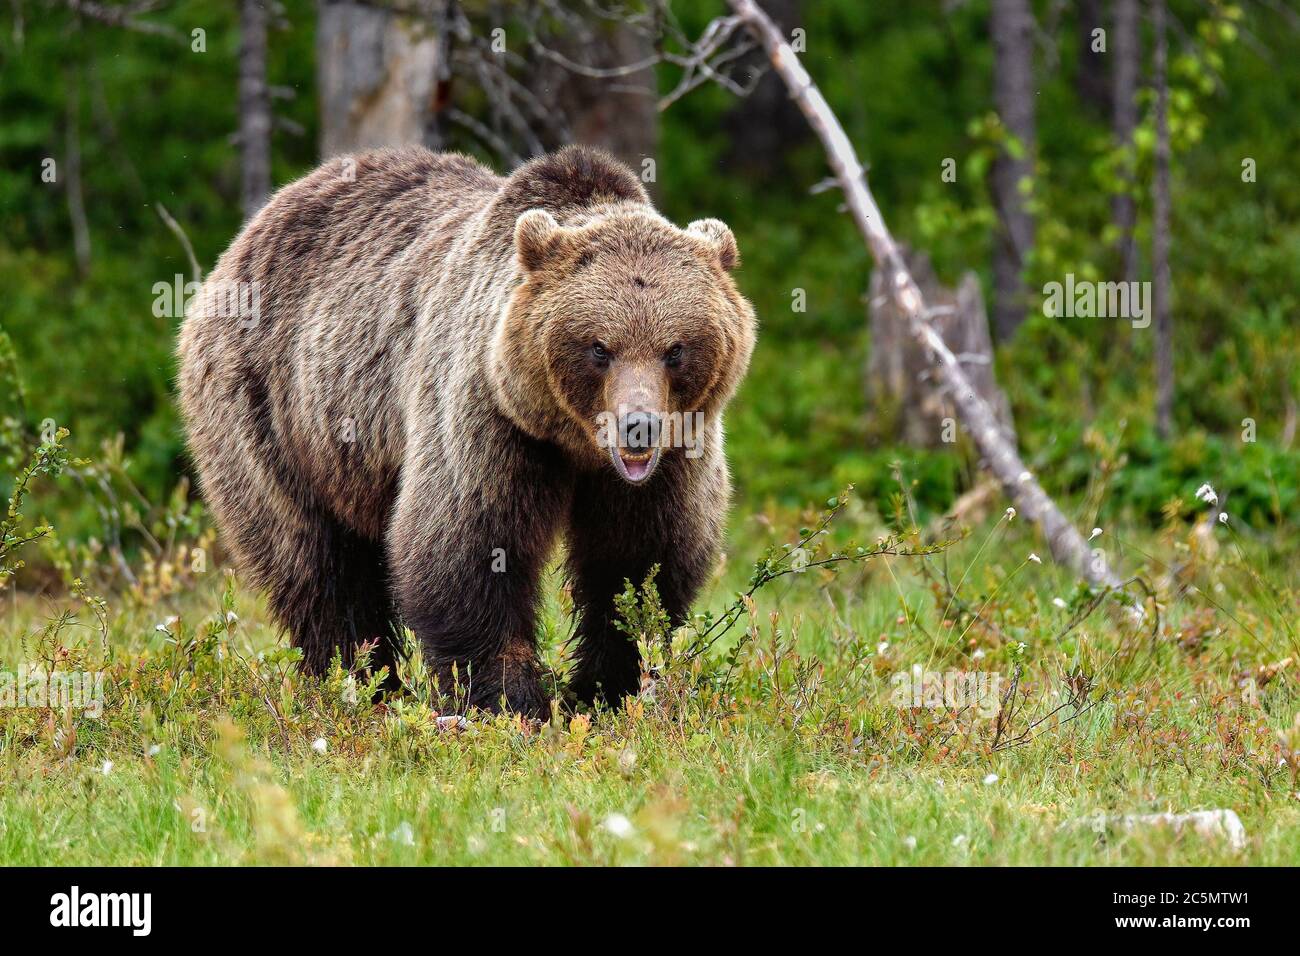 Brauner Bär sieht ein bisschen aggressiv, aber nur, um seine Mitmenschen trägt kommunizieren, dass er 'auf der Spitze der Hierarchie". Stockfoto